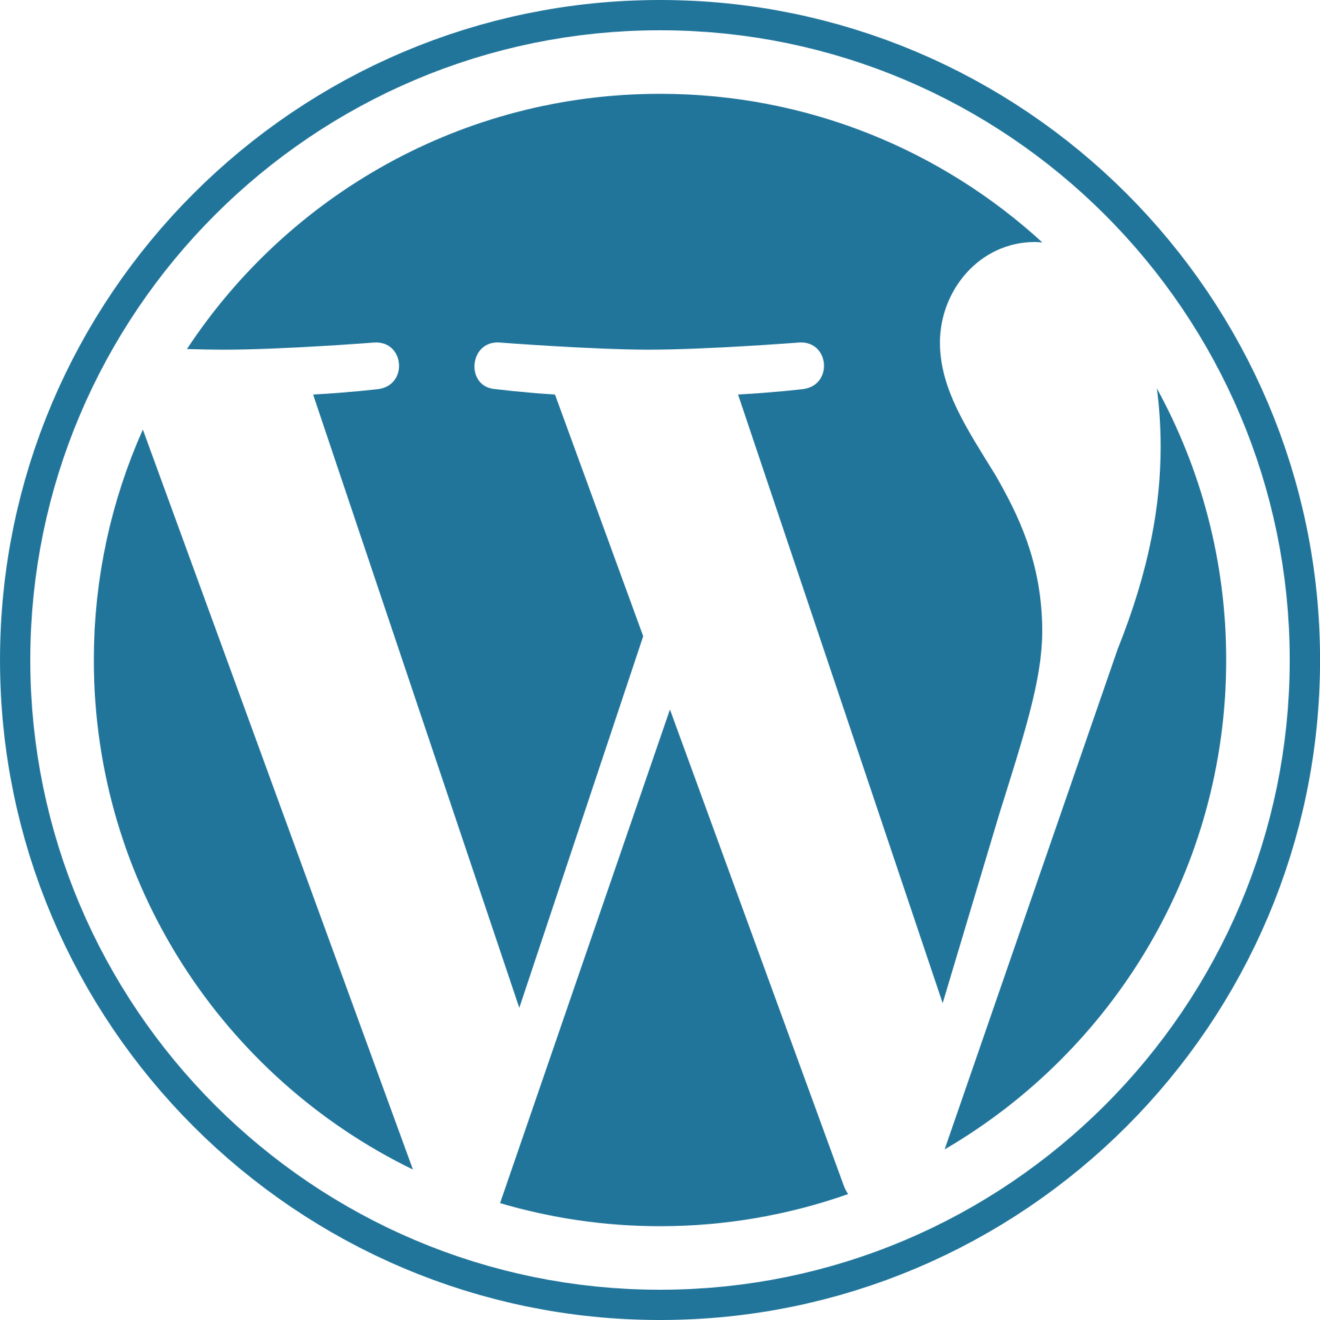 Communications Team Seeks Wordpress Volunteer